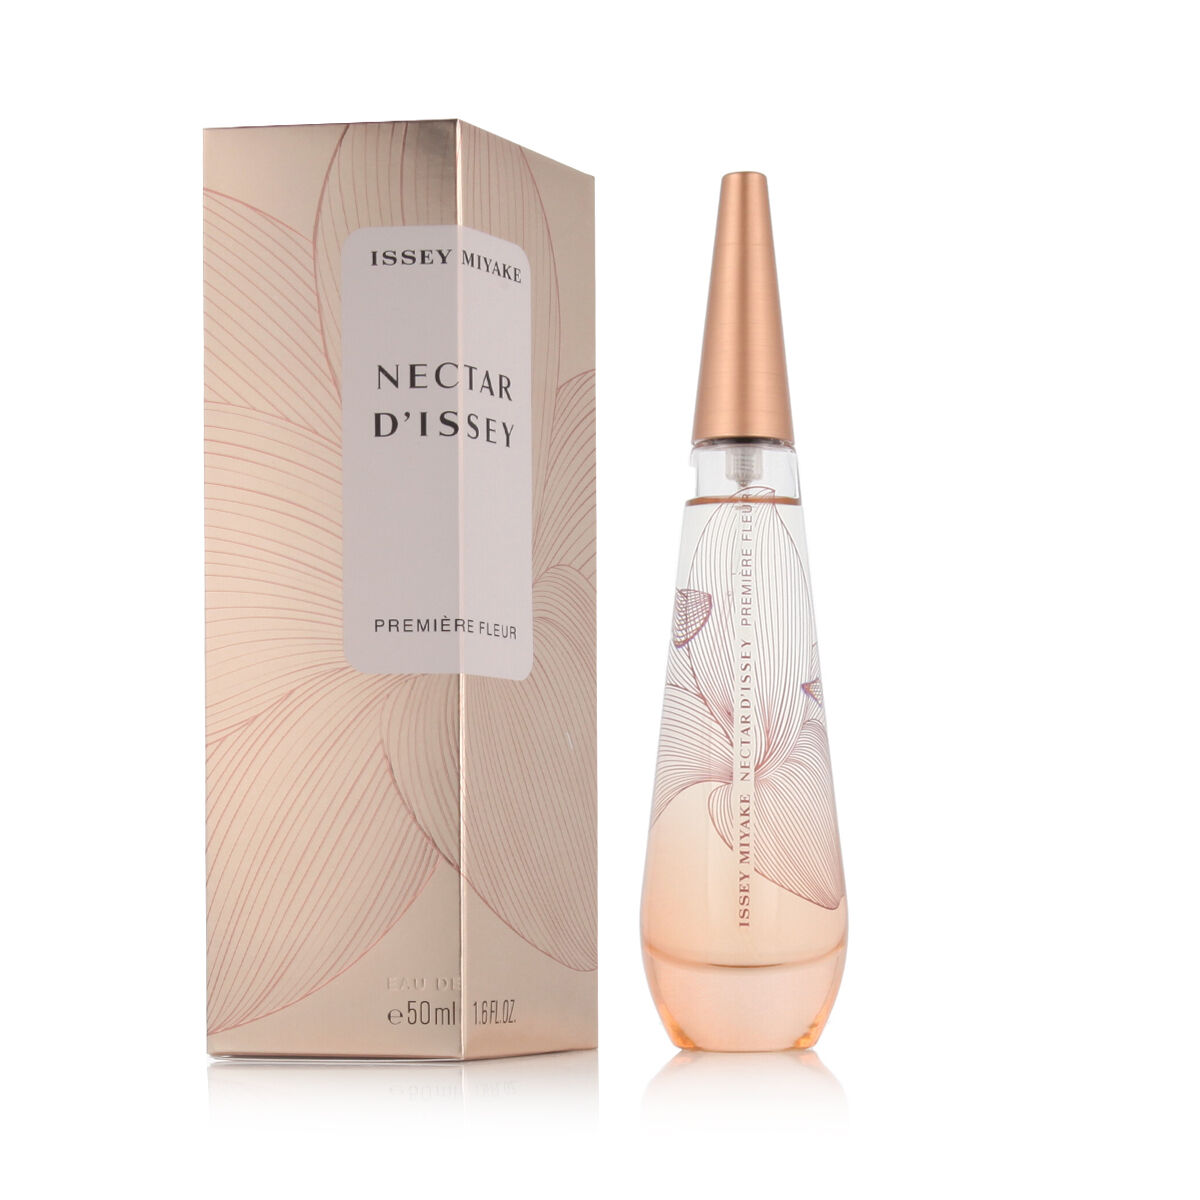 Parfum Femme Issey Miyake EDP Nectar D’Issey Premiere Fleur 50 ml